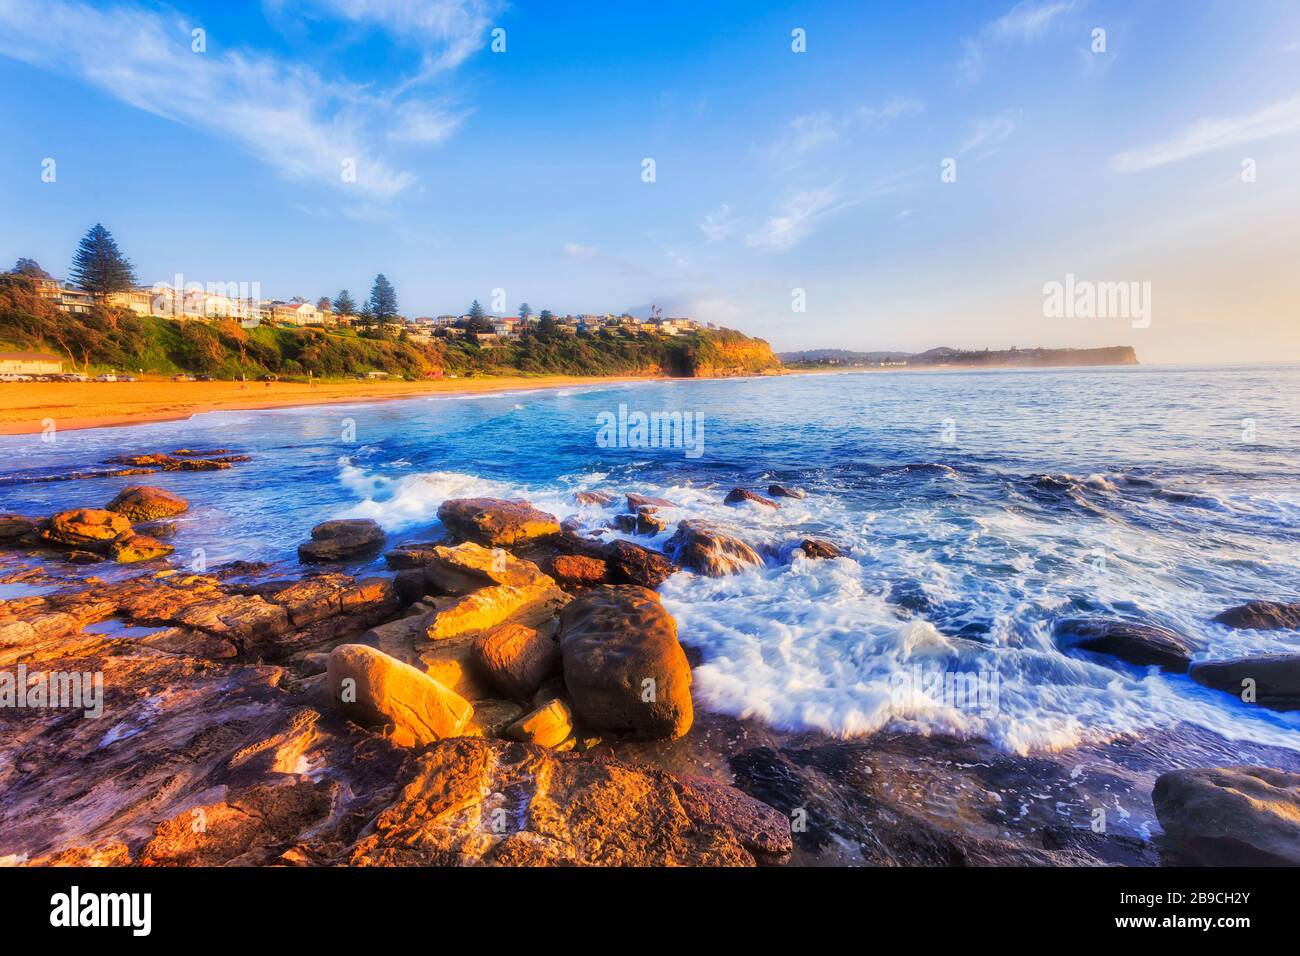 Las aguas azules limpias de la playa Warrienwood frente a Turimetta se dirigen a las playas del norte de Sydney de la costa del Pacífico. Foto de stock